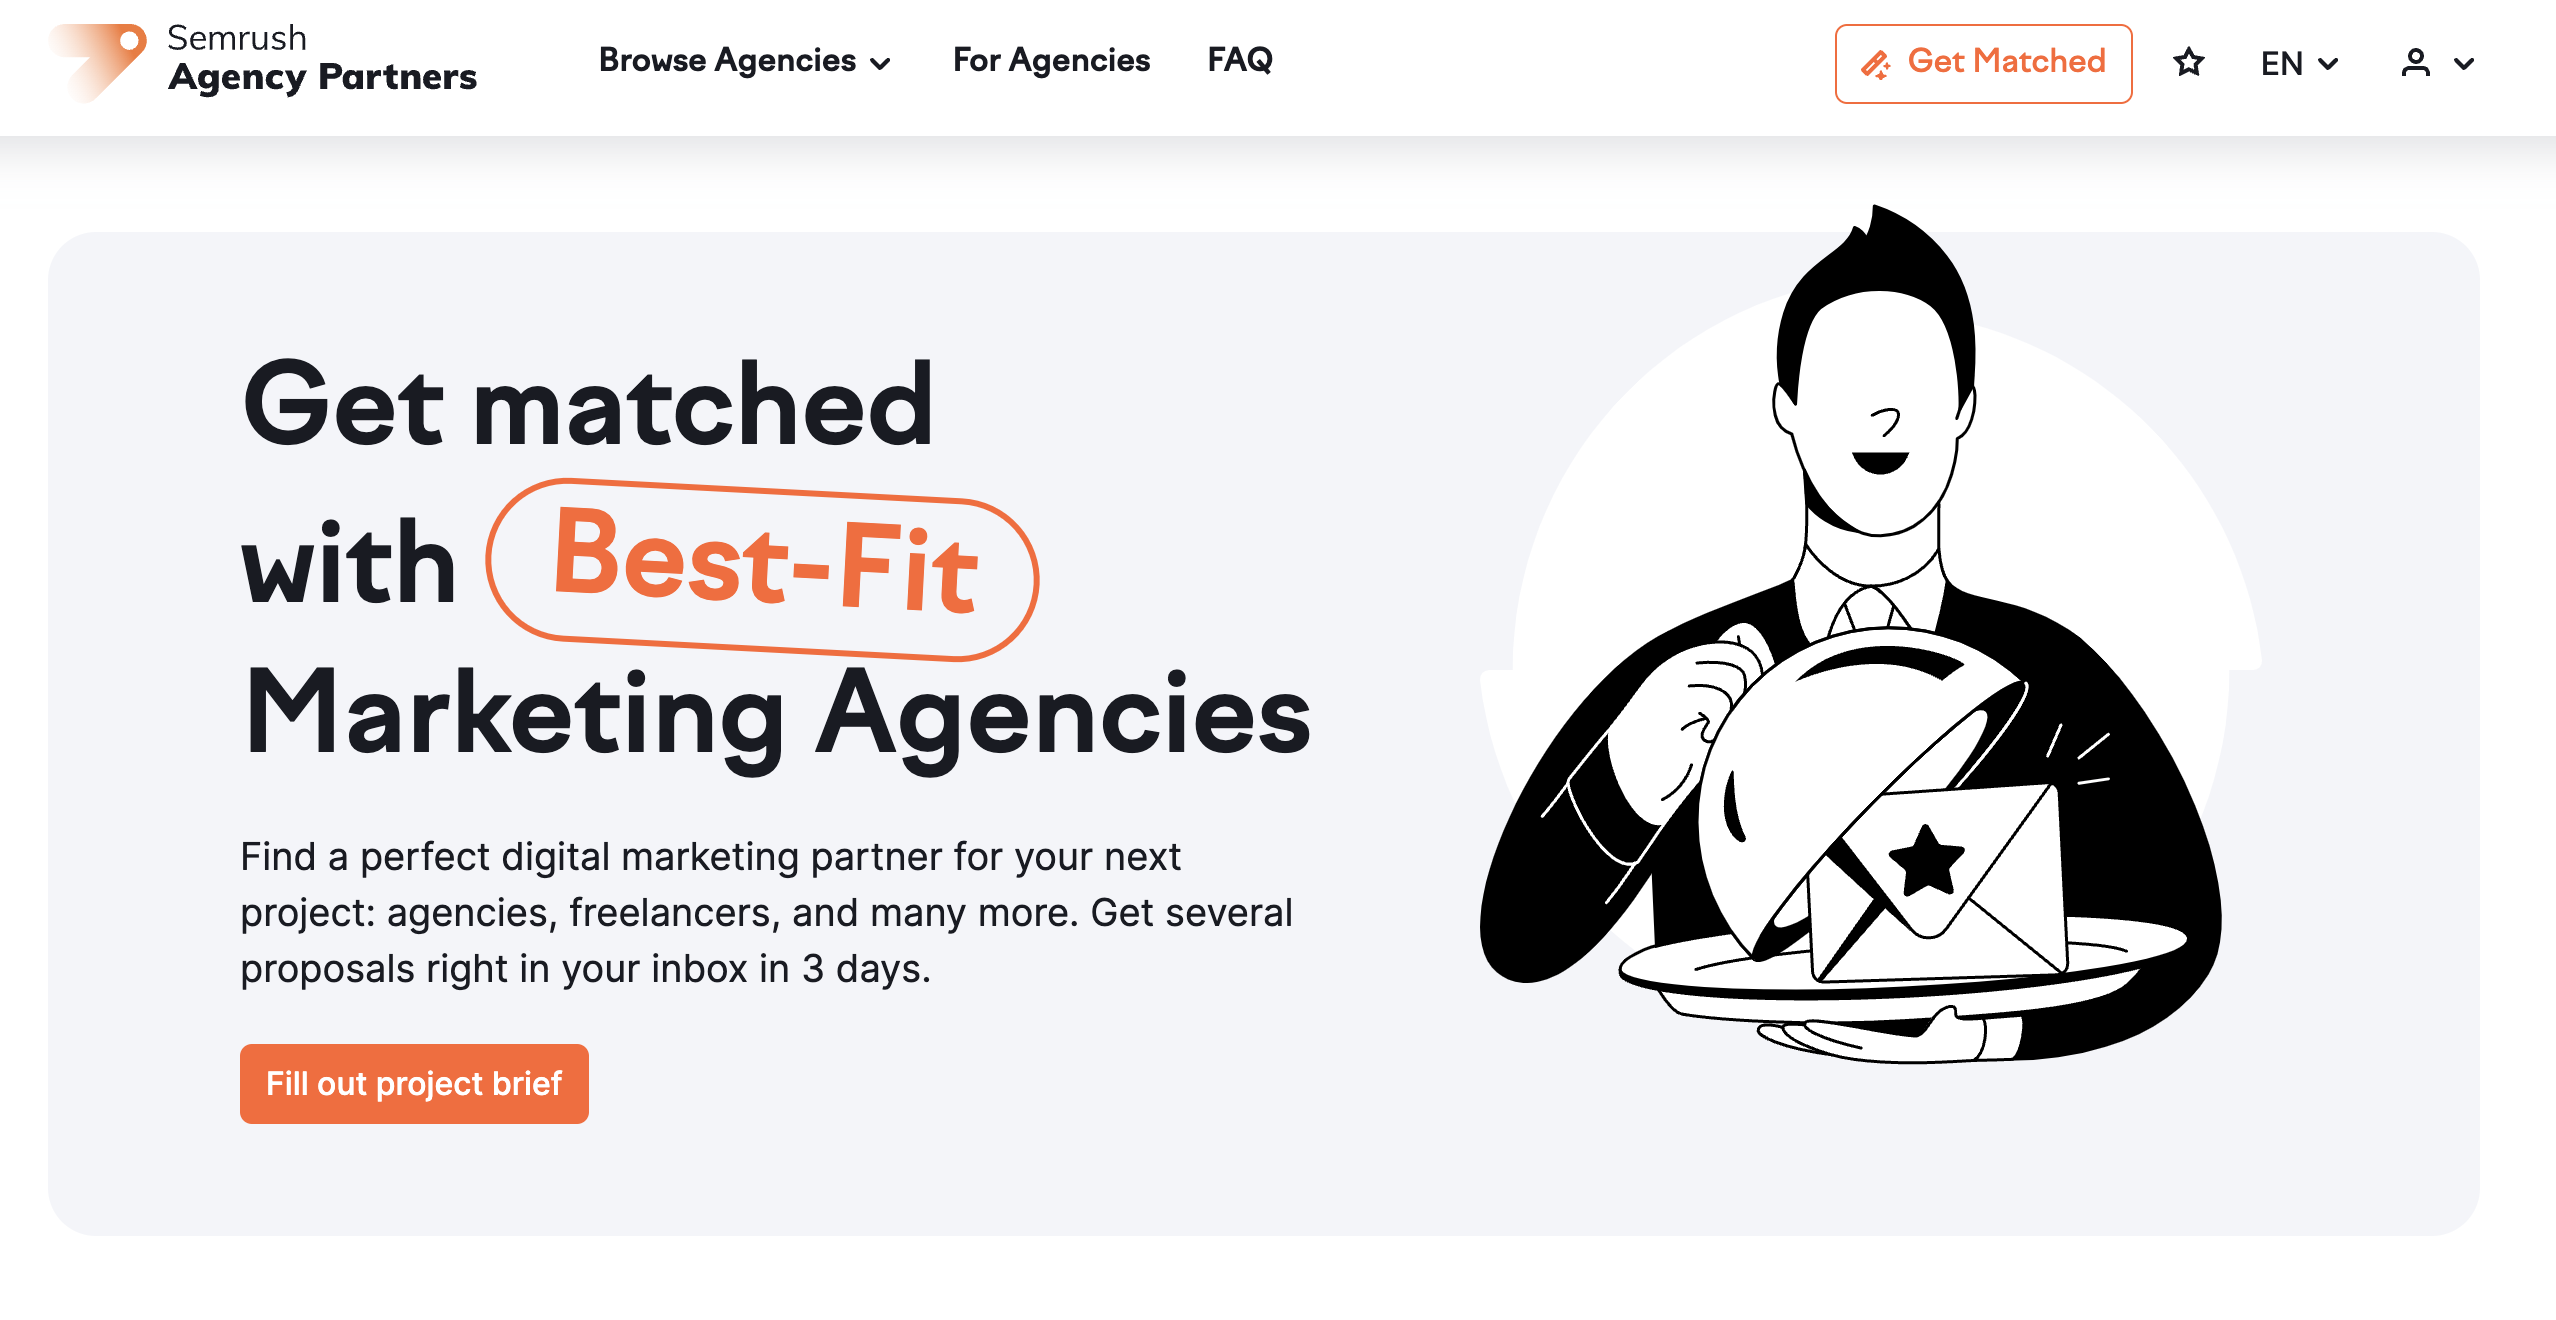 L'home page della piattaforma Agency Partner.